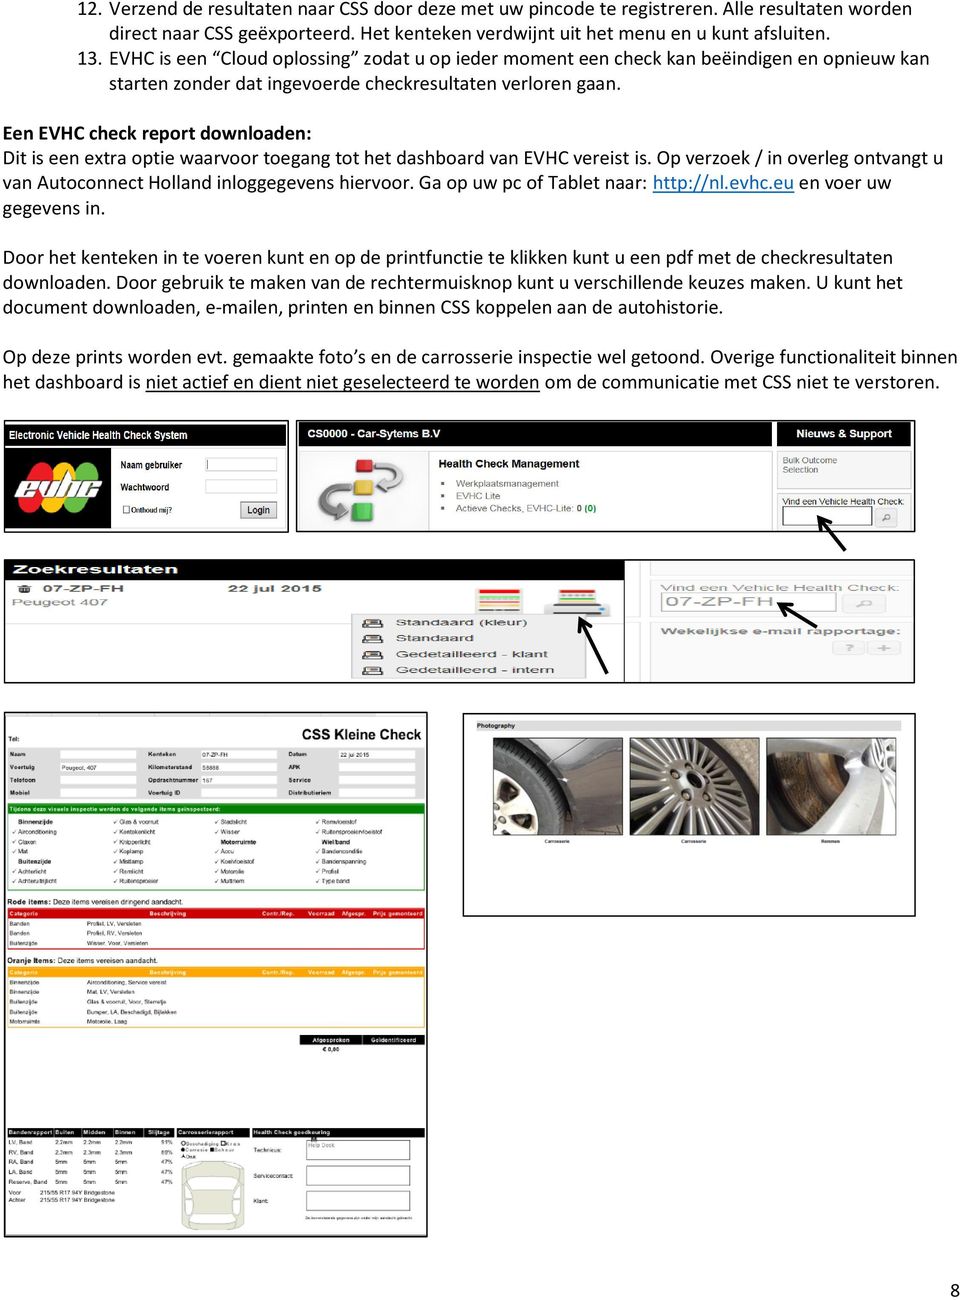 Een EVHC check report downloaden: Dit is een extra optie waarvoor toegang tot het dashboard van EVHC vereist is. Op verzoek / in overleg ontvangt u van Autoconnect Holland inloggegevens hiervoor.